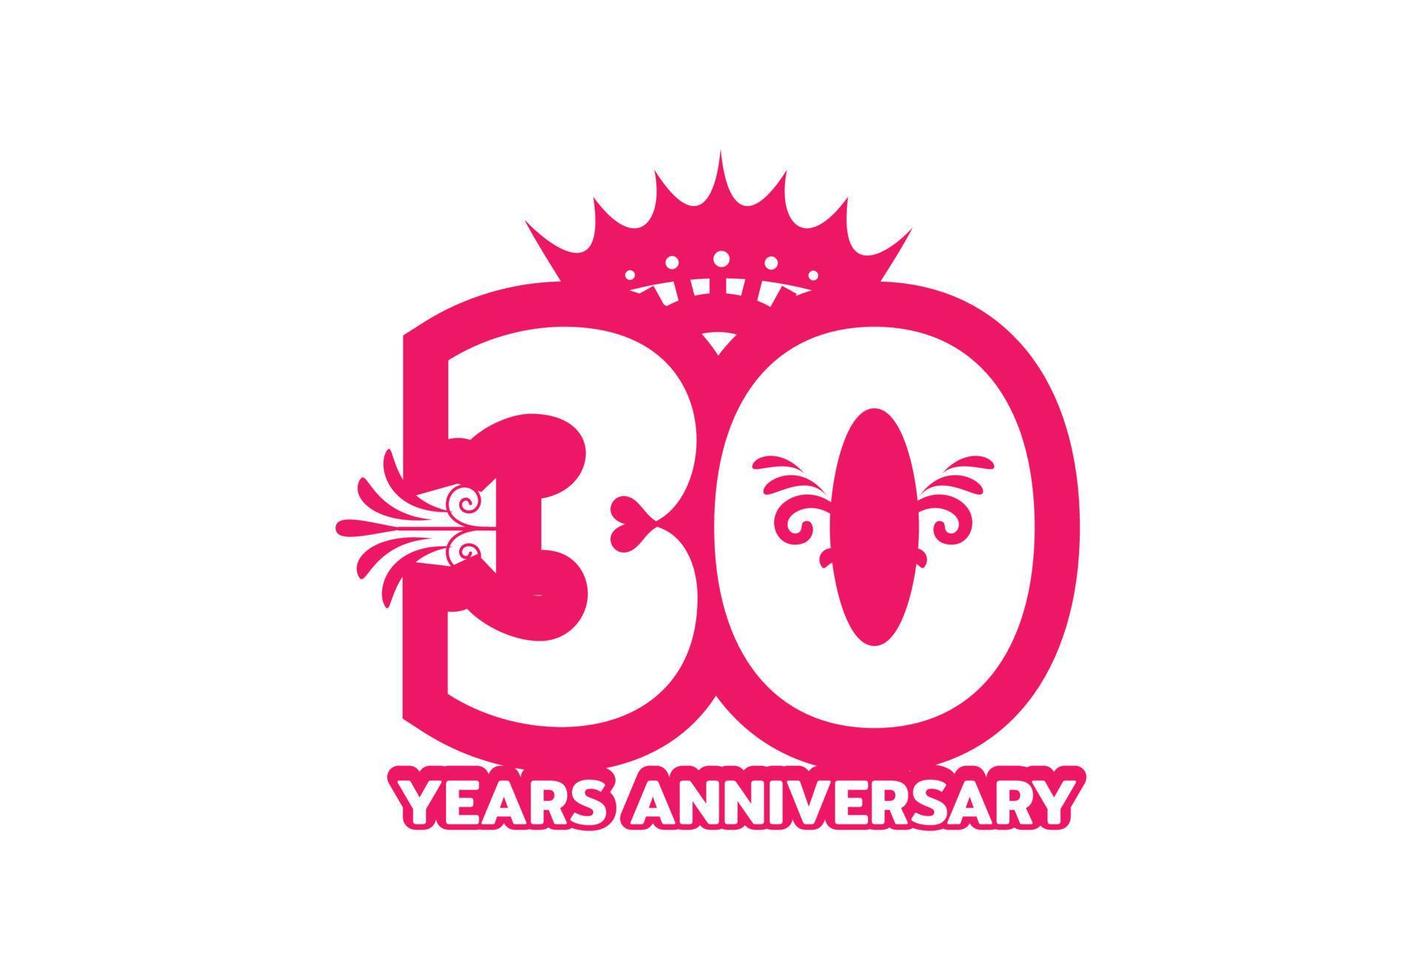 plantilla de diseño de logotipo y etiqueta de aniversario de 30 años vector